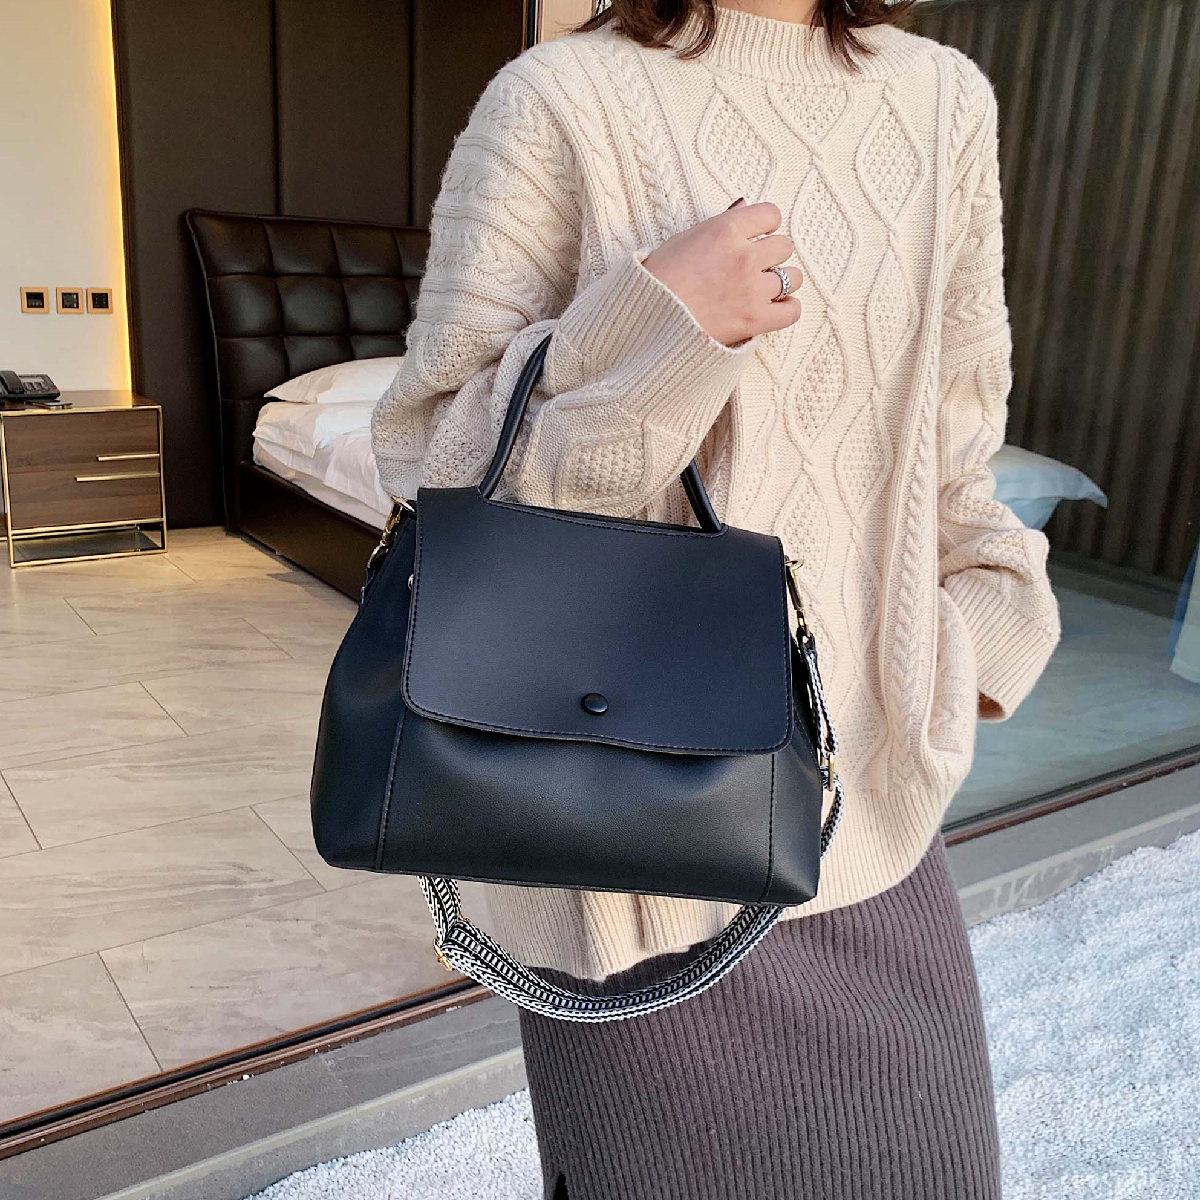 Black Fashionable Minimalist Flap Over Shoulder Bag